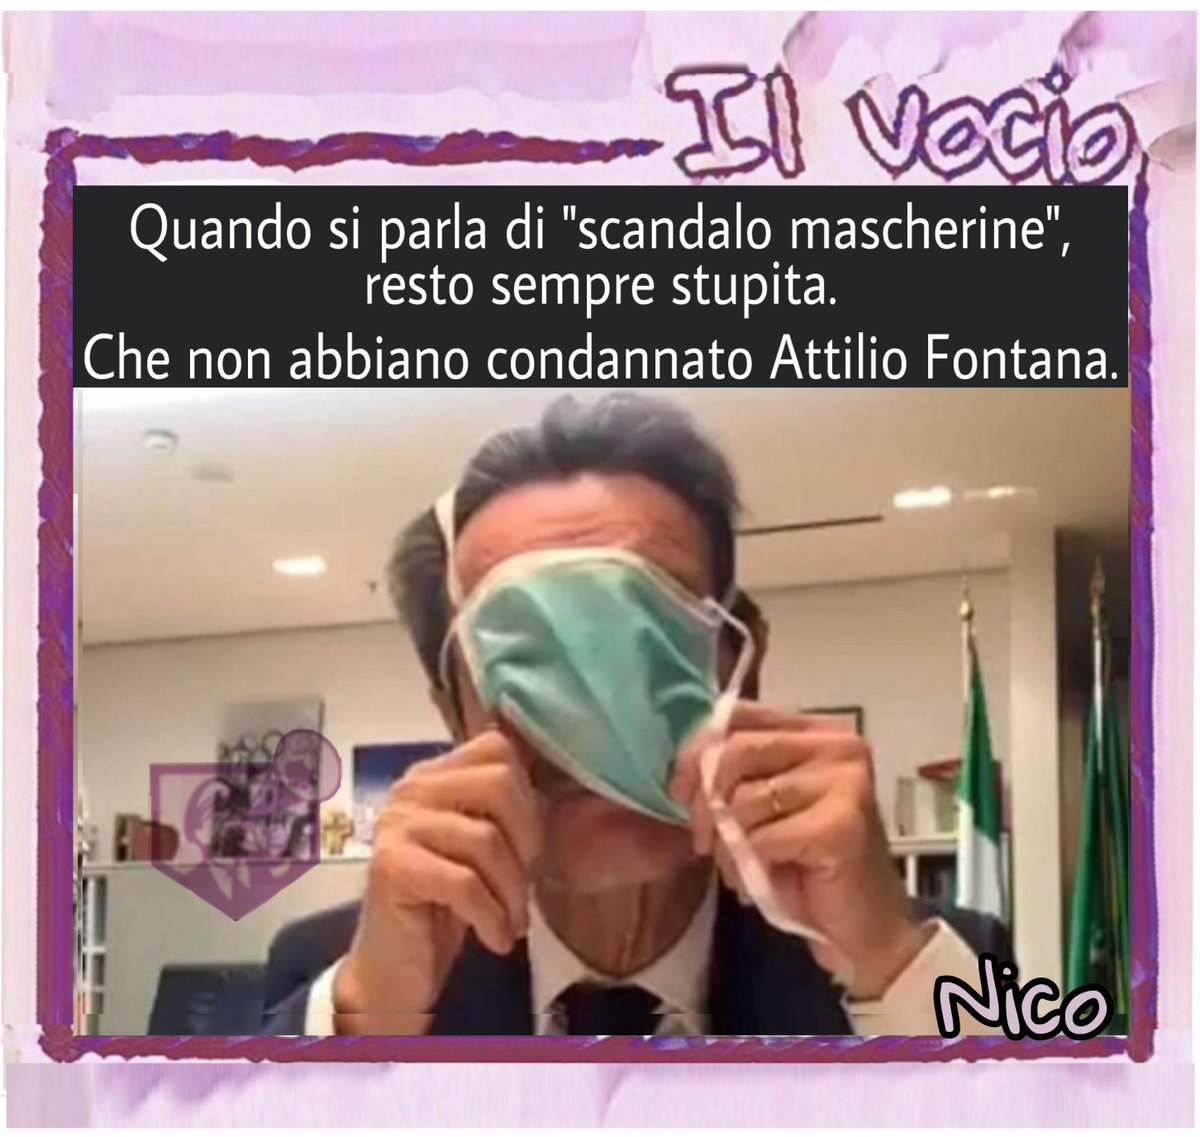 Nico @NicolettaLucher #15maggio #ilvocio #AttilioFontana #tutor #mascherine #difficoltà #incapacita #condanna #ironia